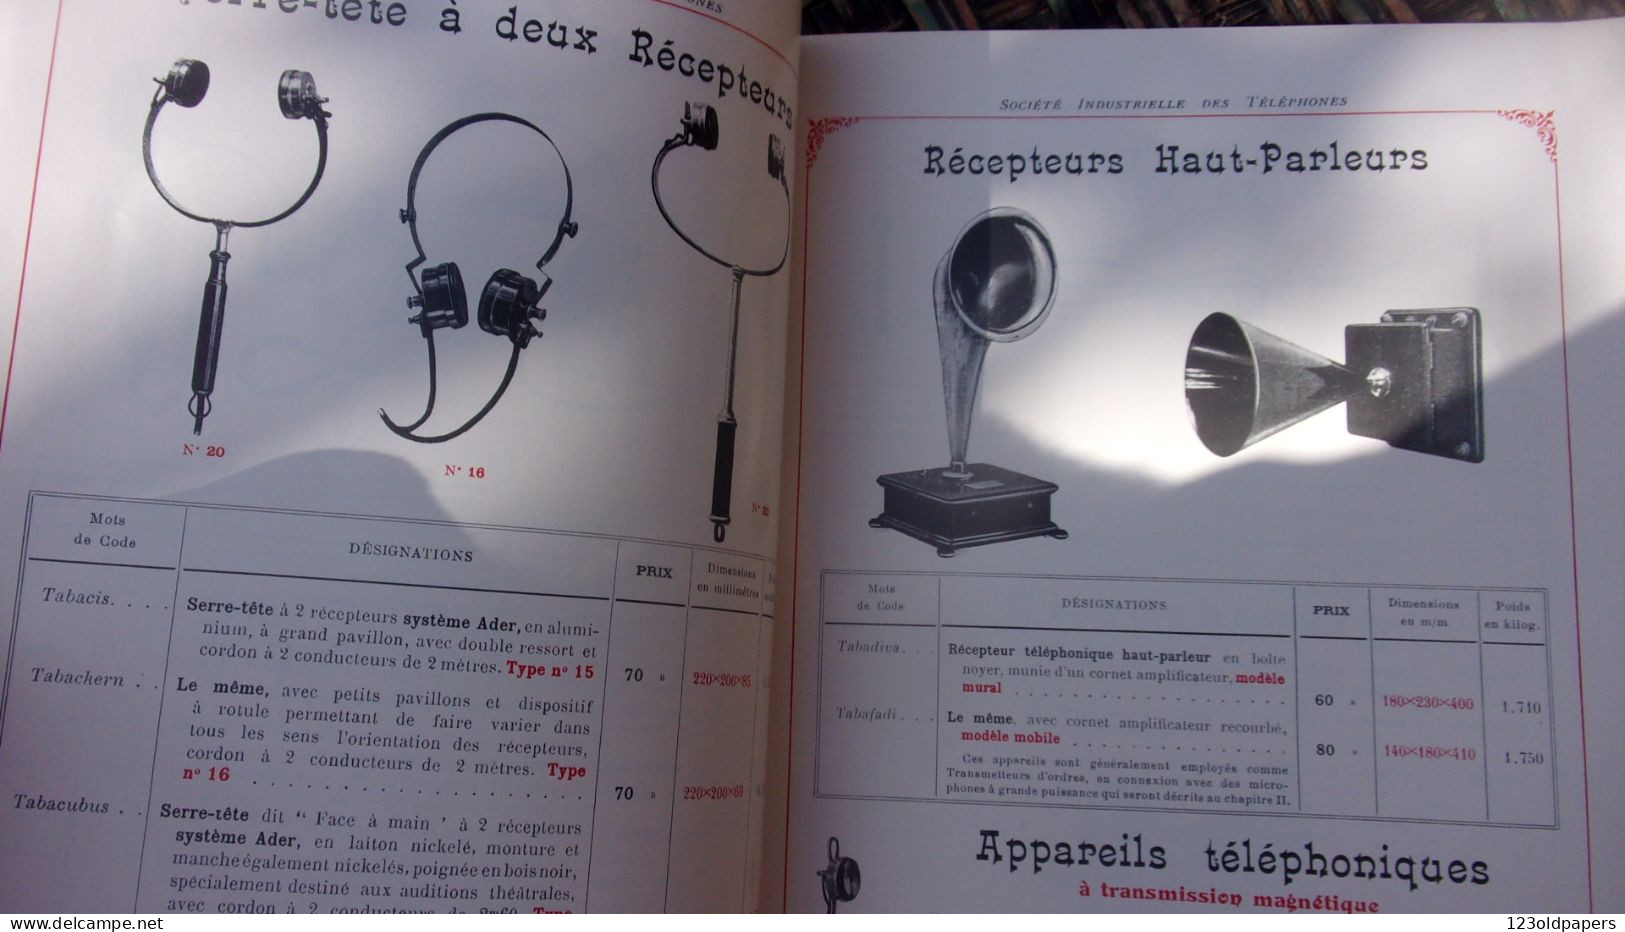 SUPERBE CATALOGUE 1909 SOCIETE INDUSTRIELLE DES TELEPHONES COMME NEUF 64 PAGES  RECEPTEURS  COMBINES.. TELEPHONE